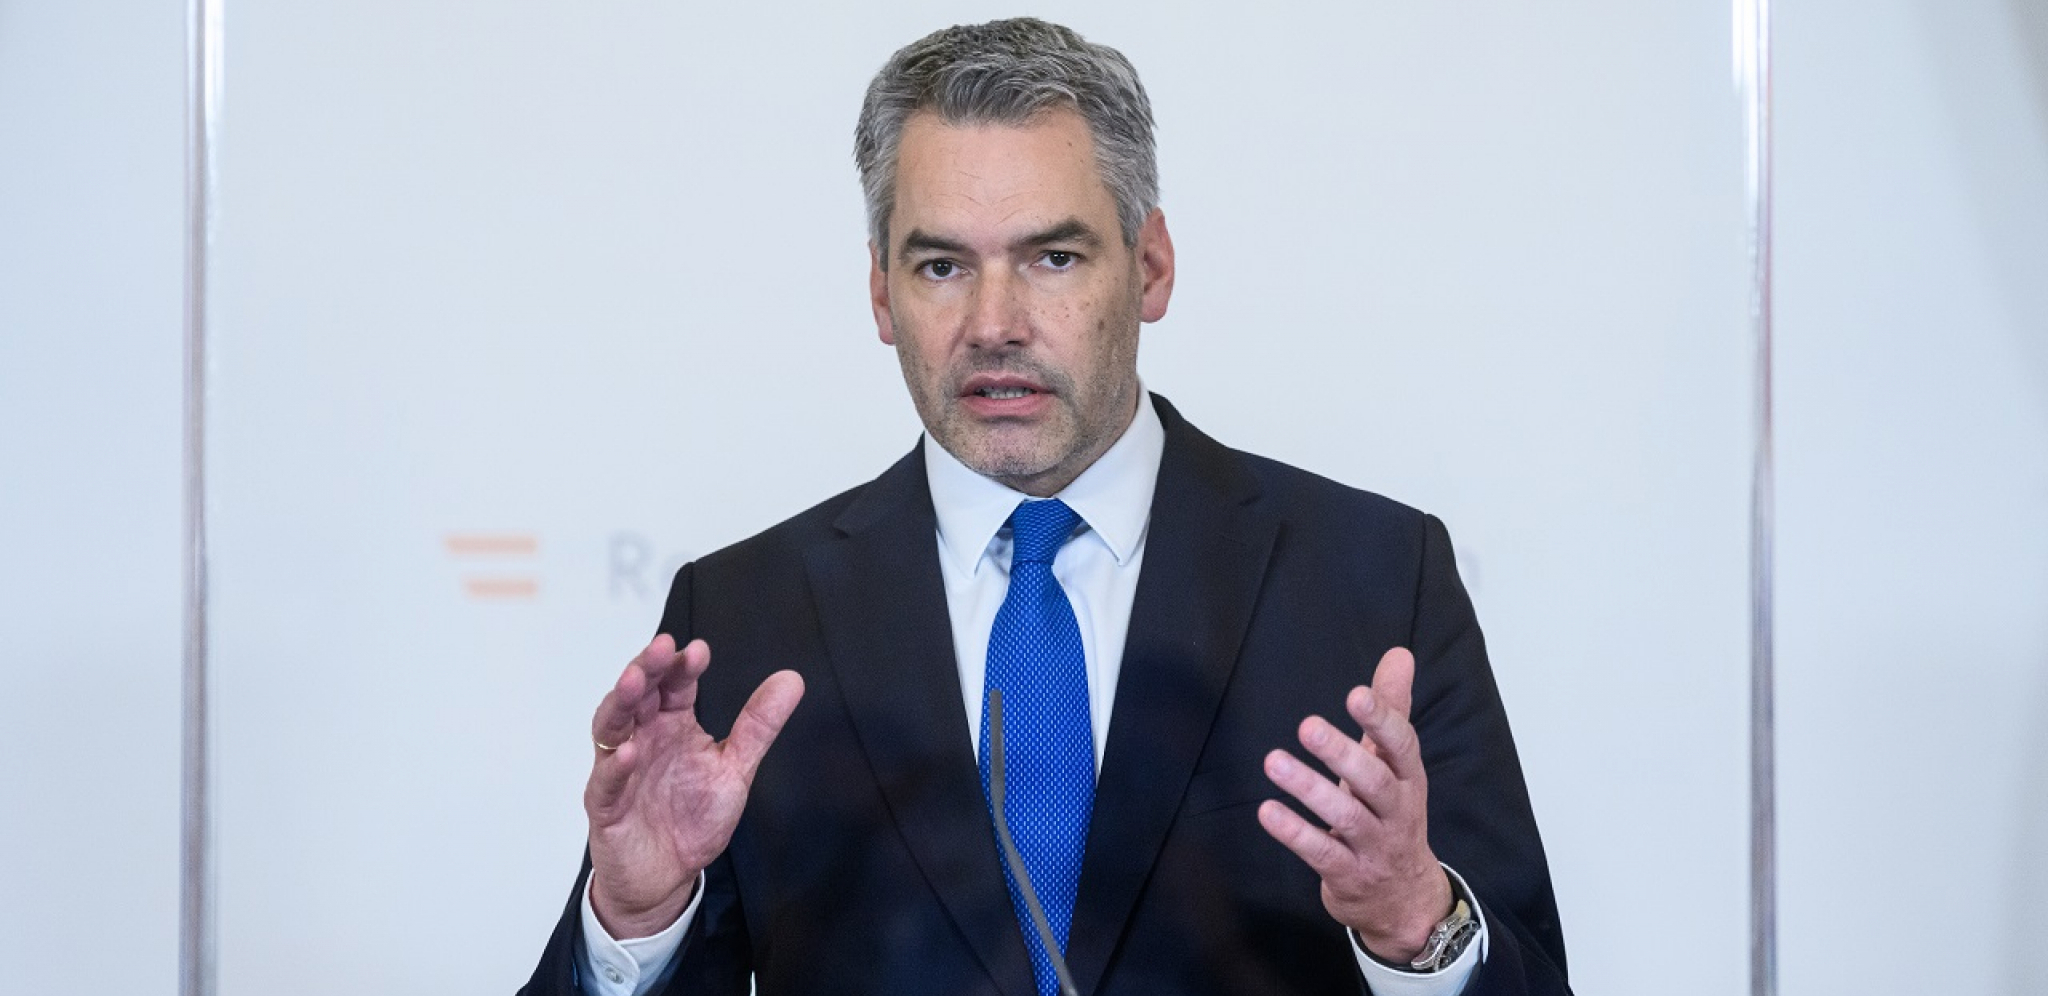 "NATO NE DOLAZI U OBZIR" Kancelar Nehamer: Austrija je bila, jeste i ostaće neutralna